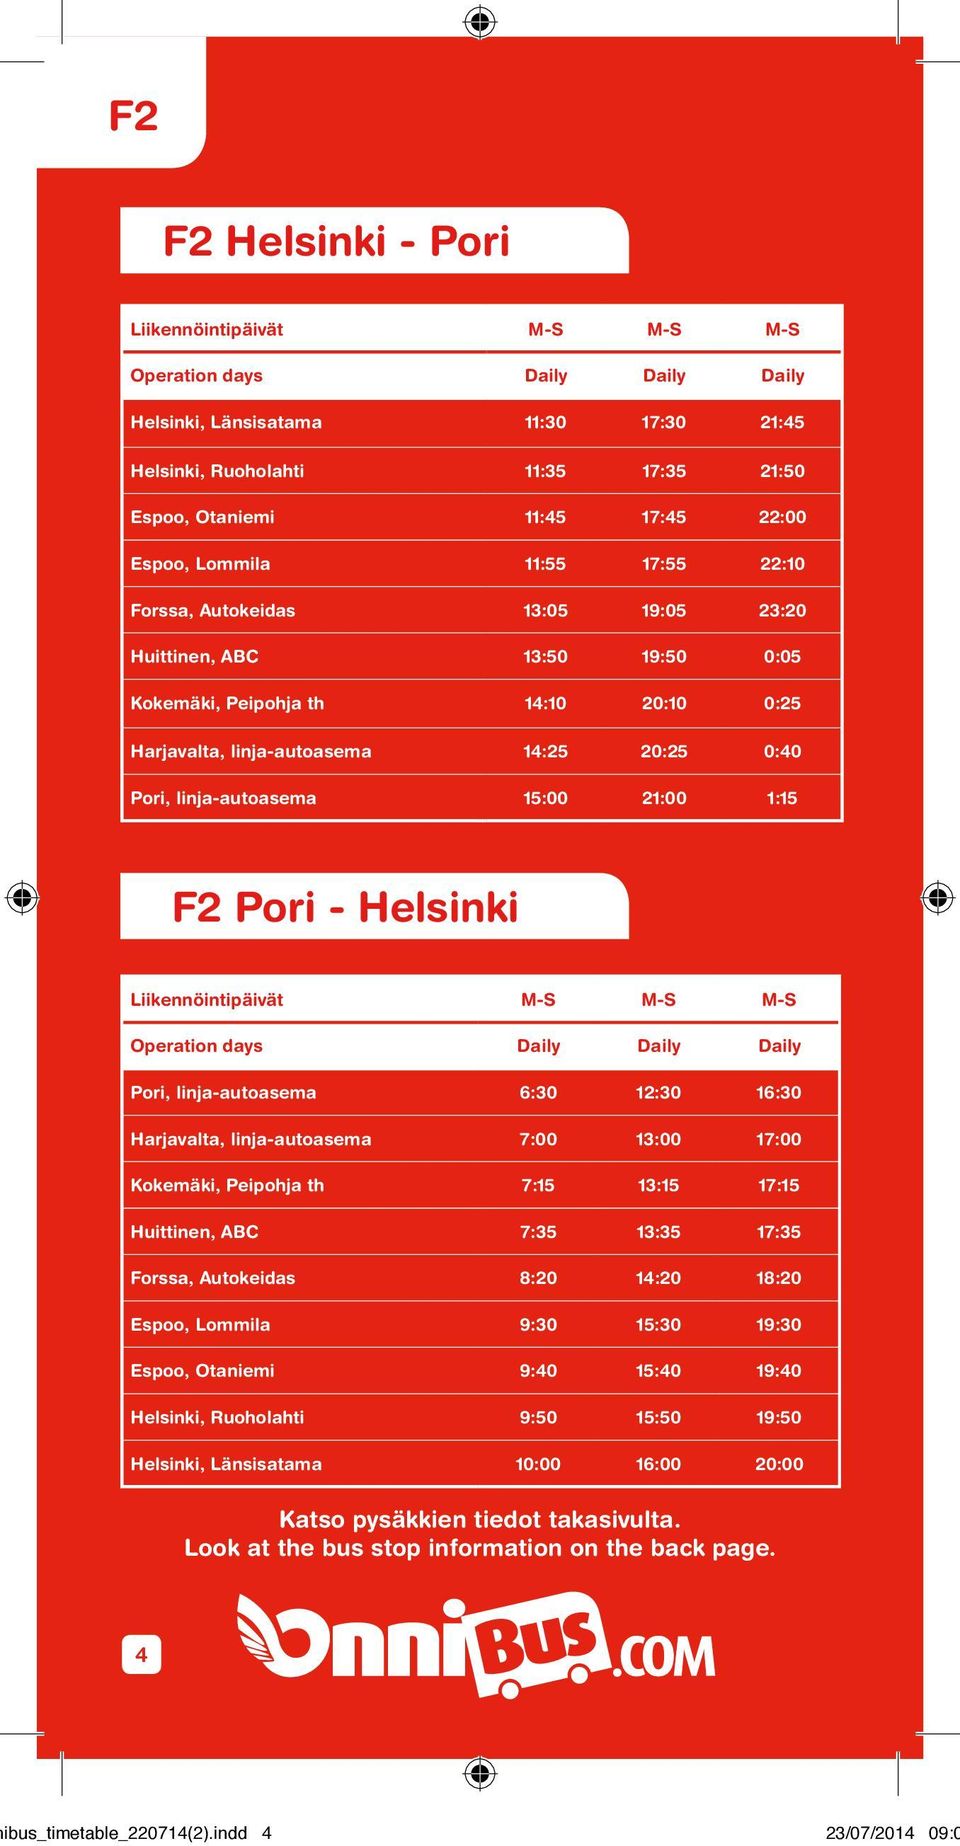 Pori - Helsinki Liikennöintipäivät M-S M-S M-S Operation days Daily Daily Daily Pori, 6:30 12:30 16:30 Harjavalta, 7:00 13:00 17:00 Kokemäki, Peipohja th 7:15 13:15 17:15 Huittinen, ABC 7:35 13:35